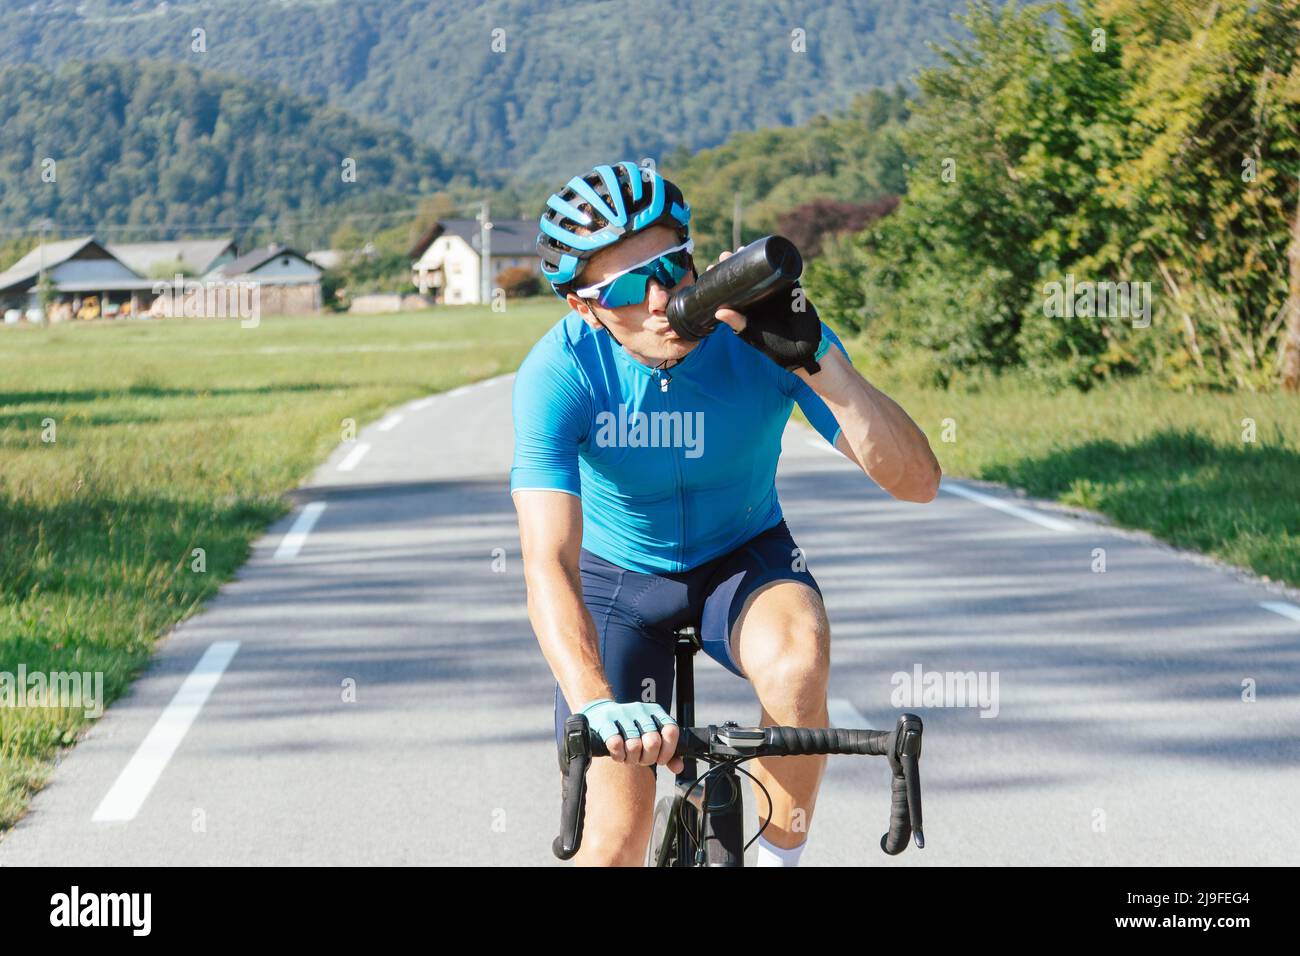 Detenerse Mensajero petróleo El ciclista caucásico masculino de carreras de bicicletas en la camiseta  deportiva azul bebe agua de una botella mientras monta, vista frontal  Fotografía de stock - Alamy